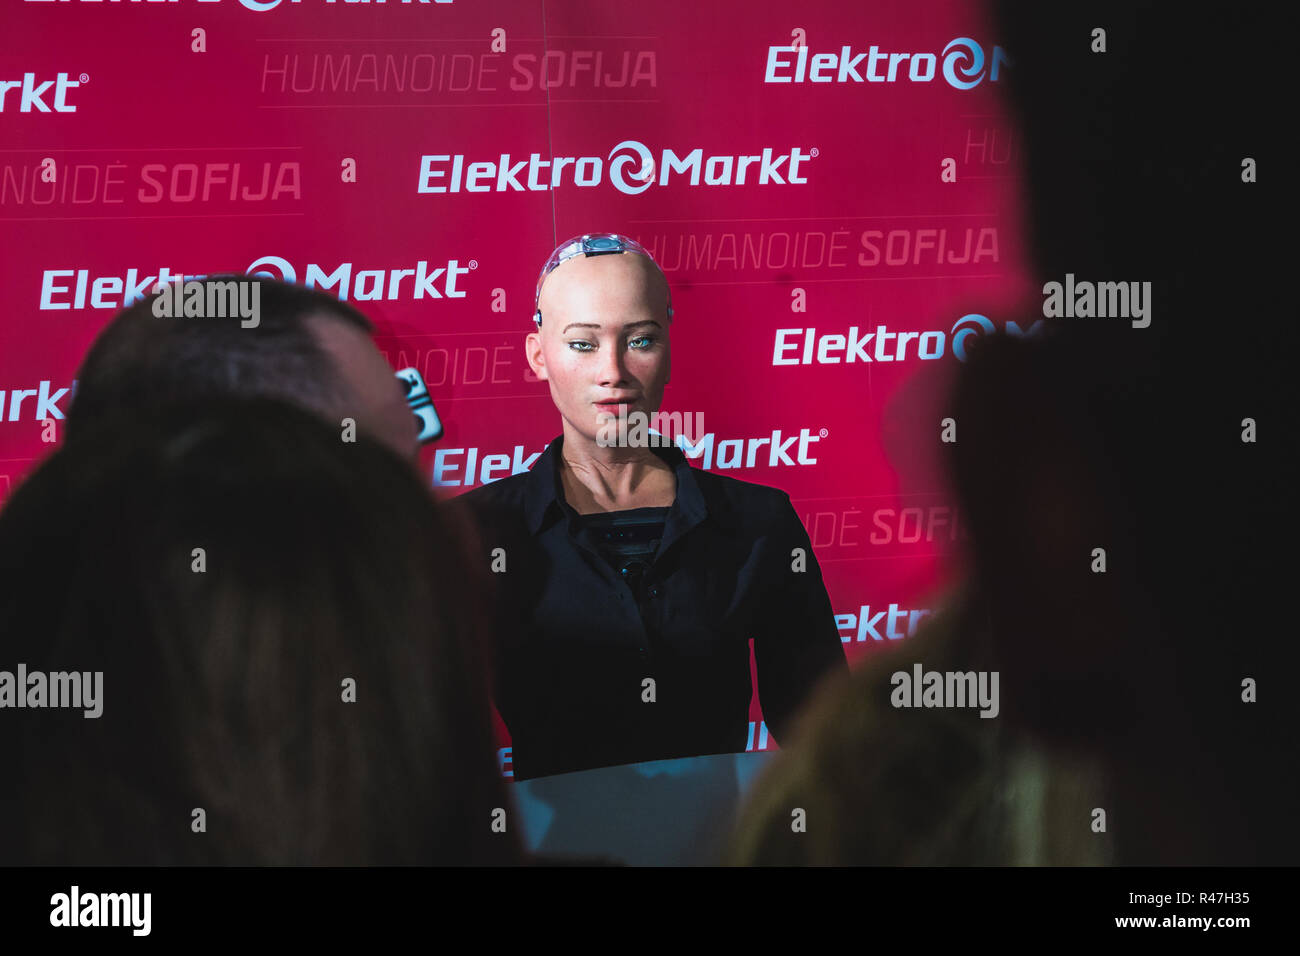 Vilnius, Lituania - 19 dicembre 2017: Sophia robot umanoide che parla alla folla di persone al centro Elektromarkt, supermercato Panorama. Foto Stock